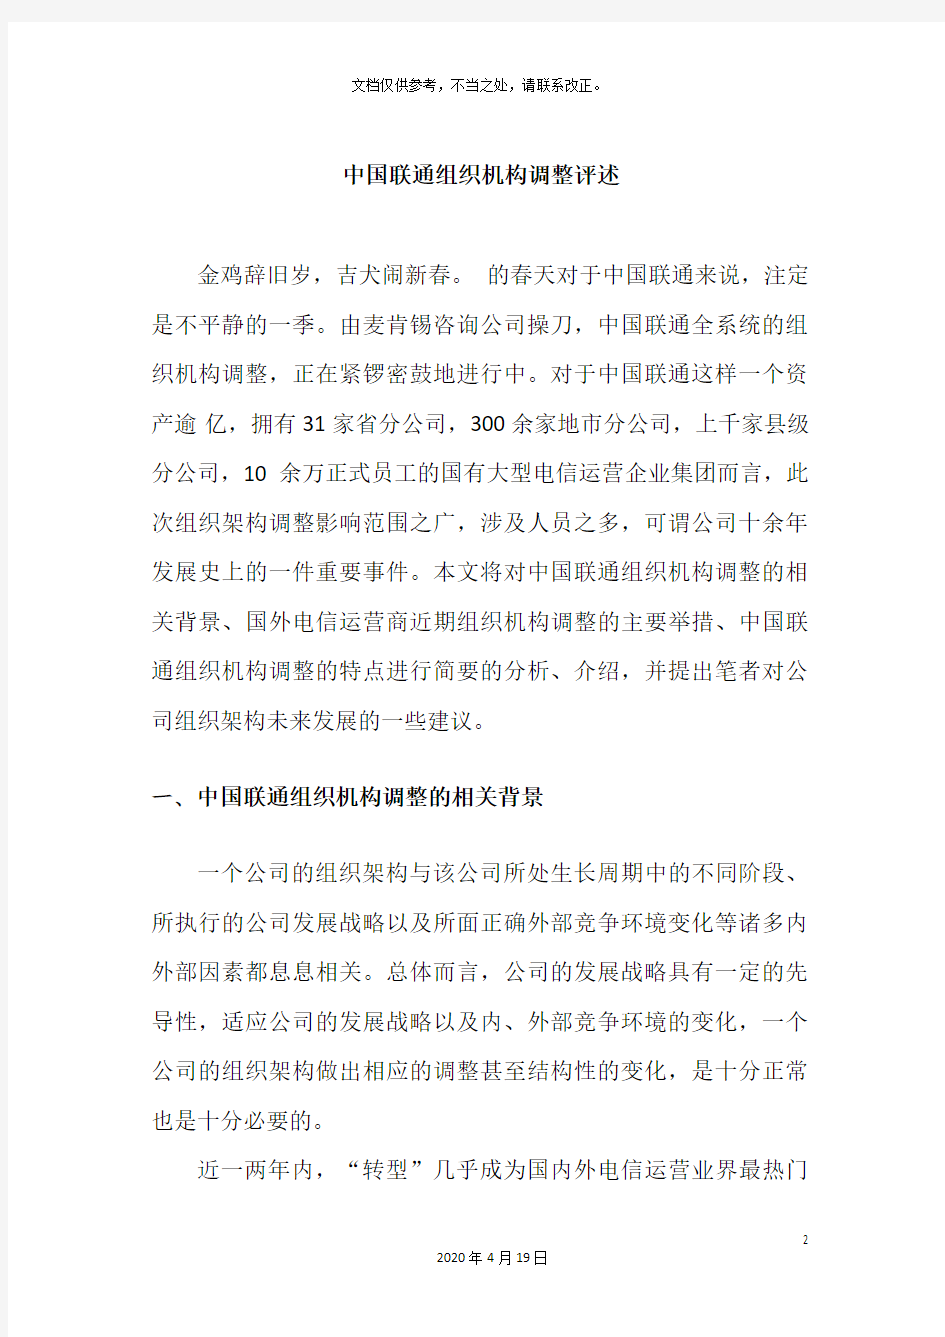 中国联通组织机构调整评述new